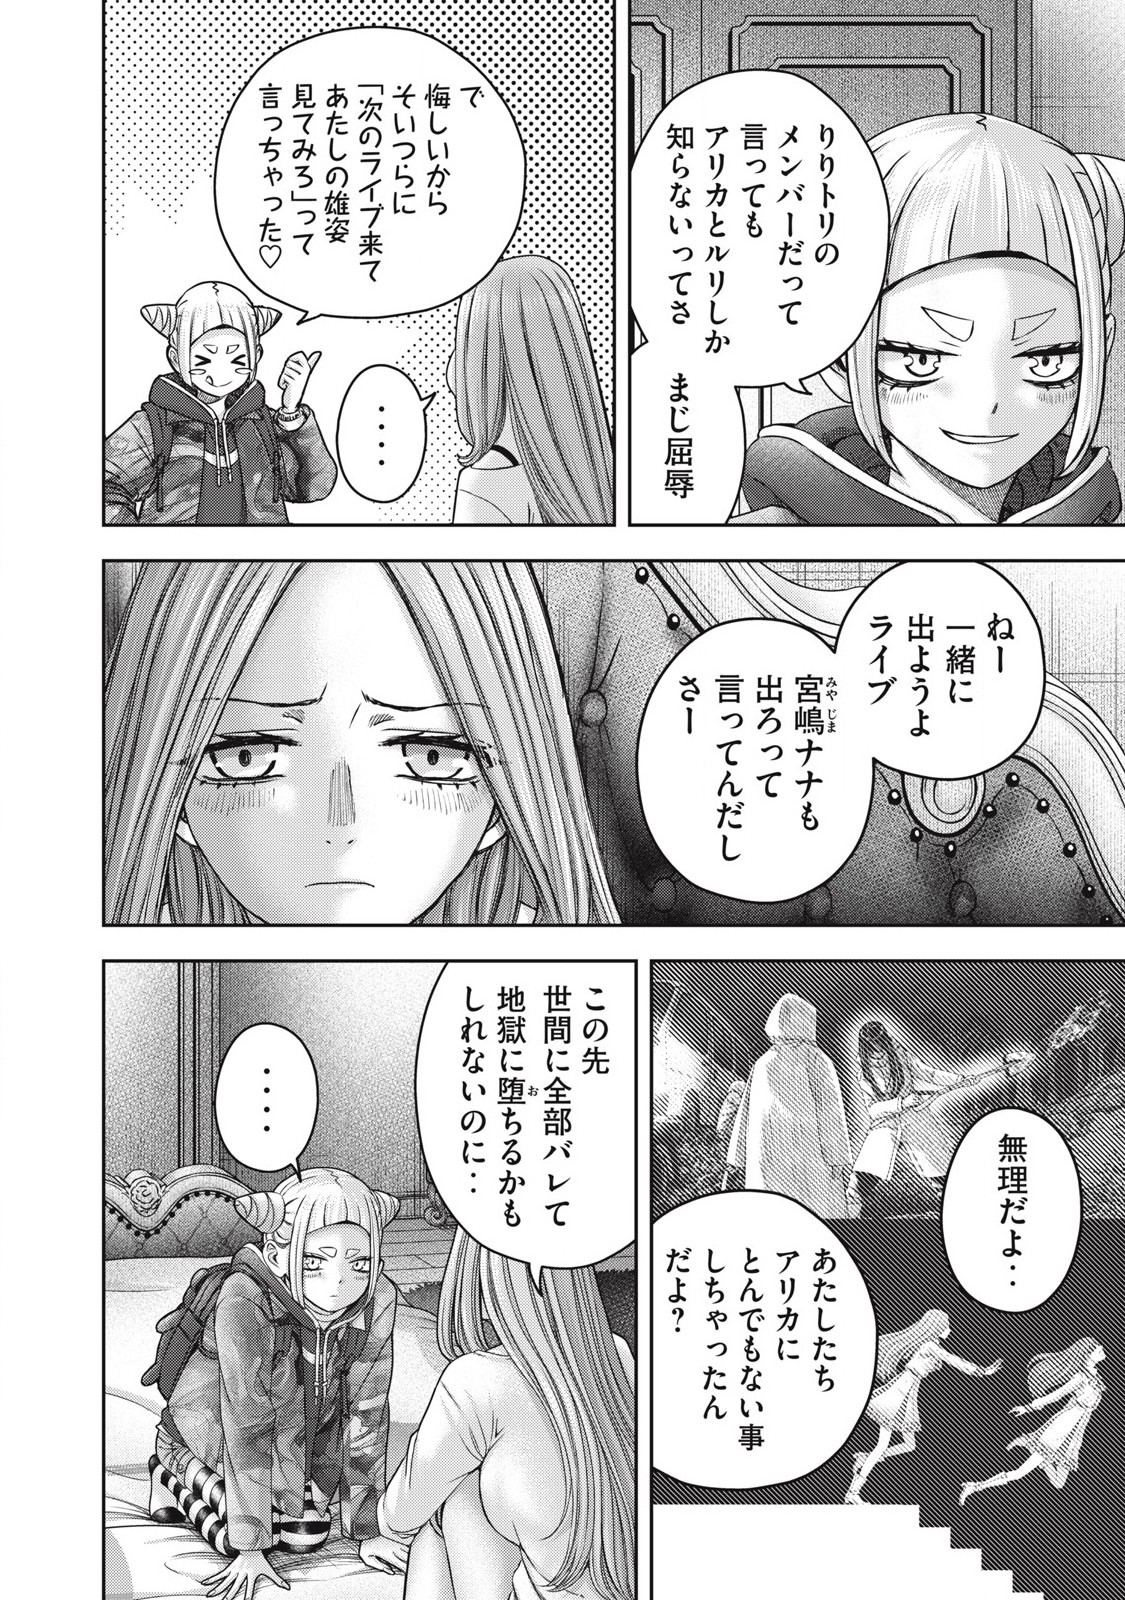 Watashi no Arika - Chapter 57 - Page 6